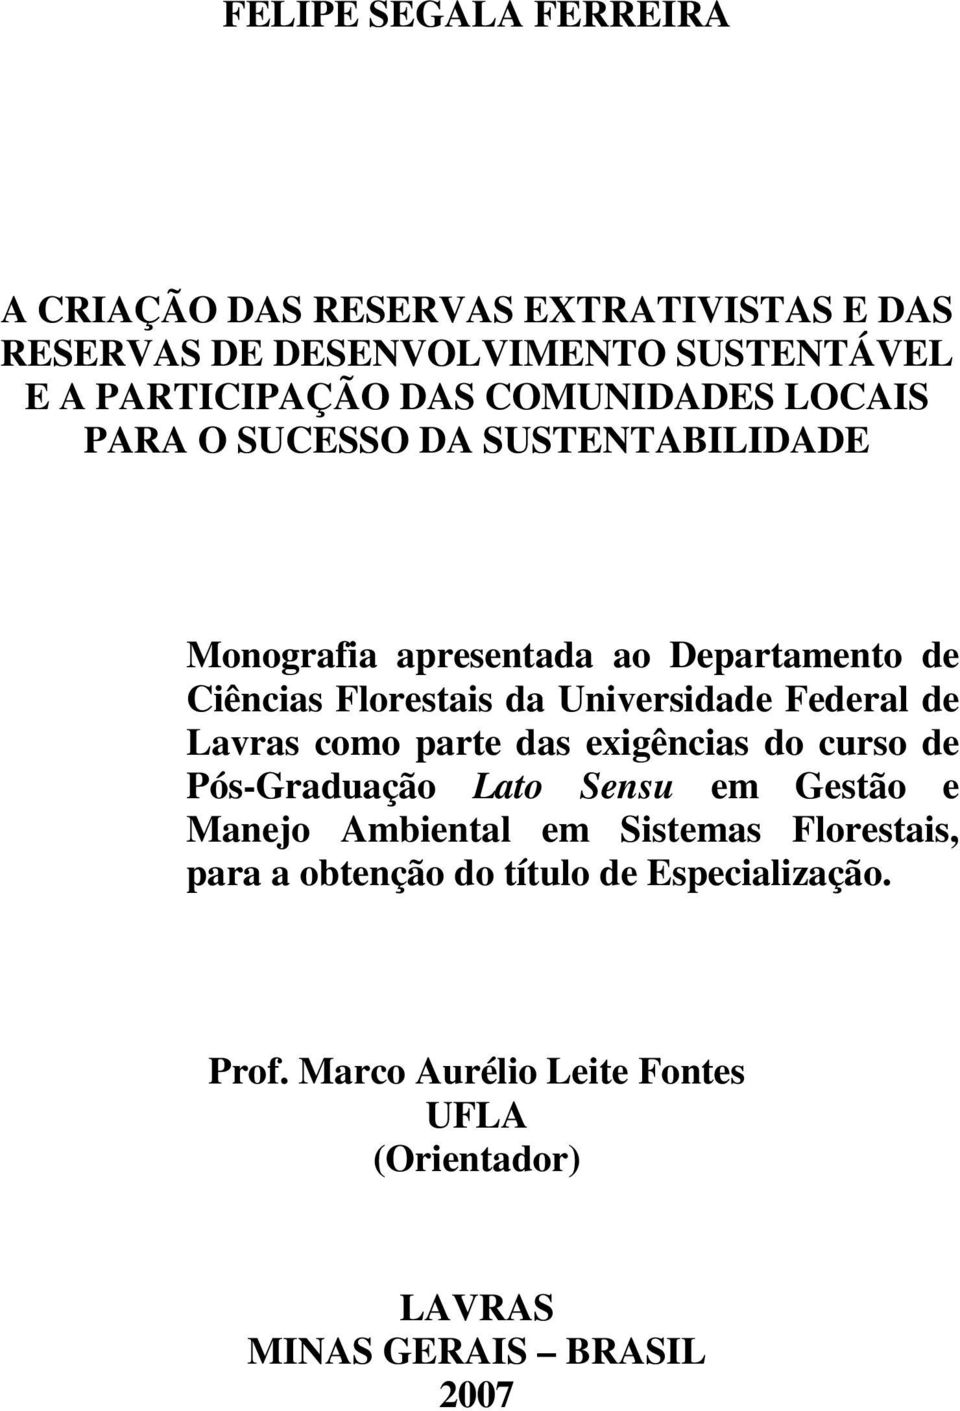 Universidade Federal de Lavras como parte das exigências do curso de Pós-Graduação Lato Sensu em Gestão e Manejo Ambiental em